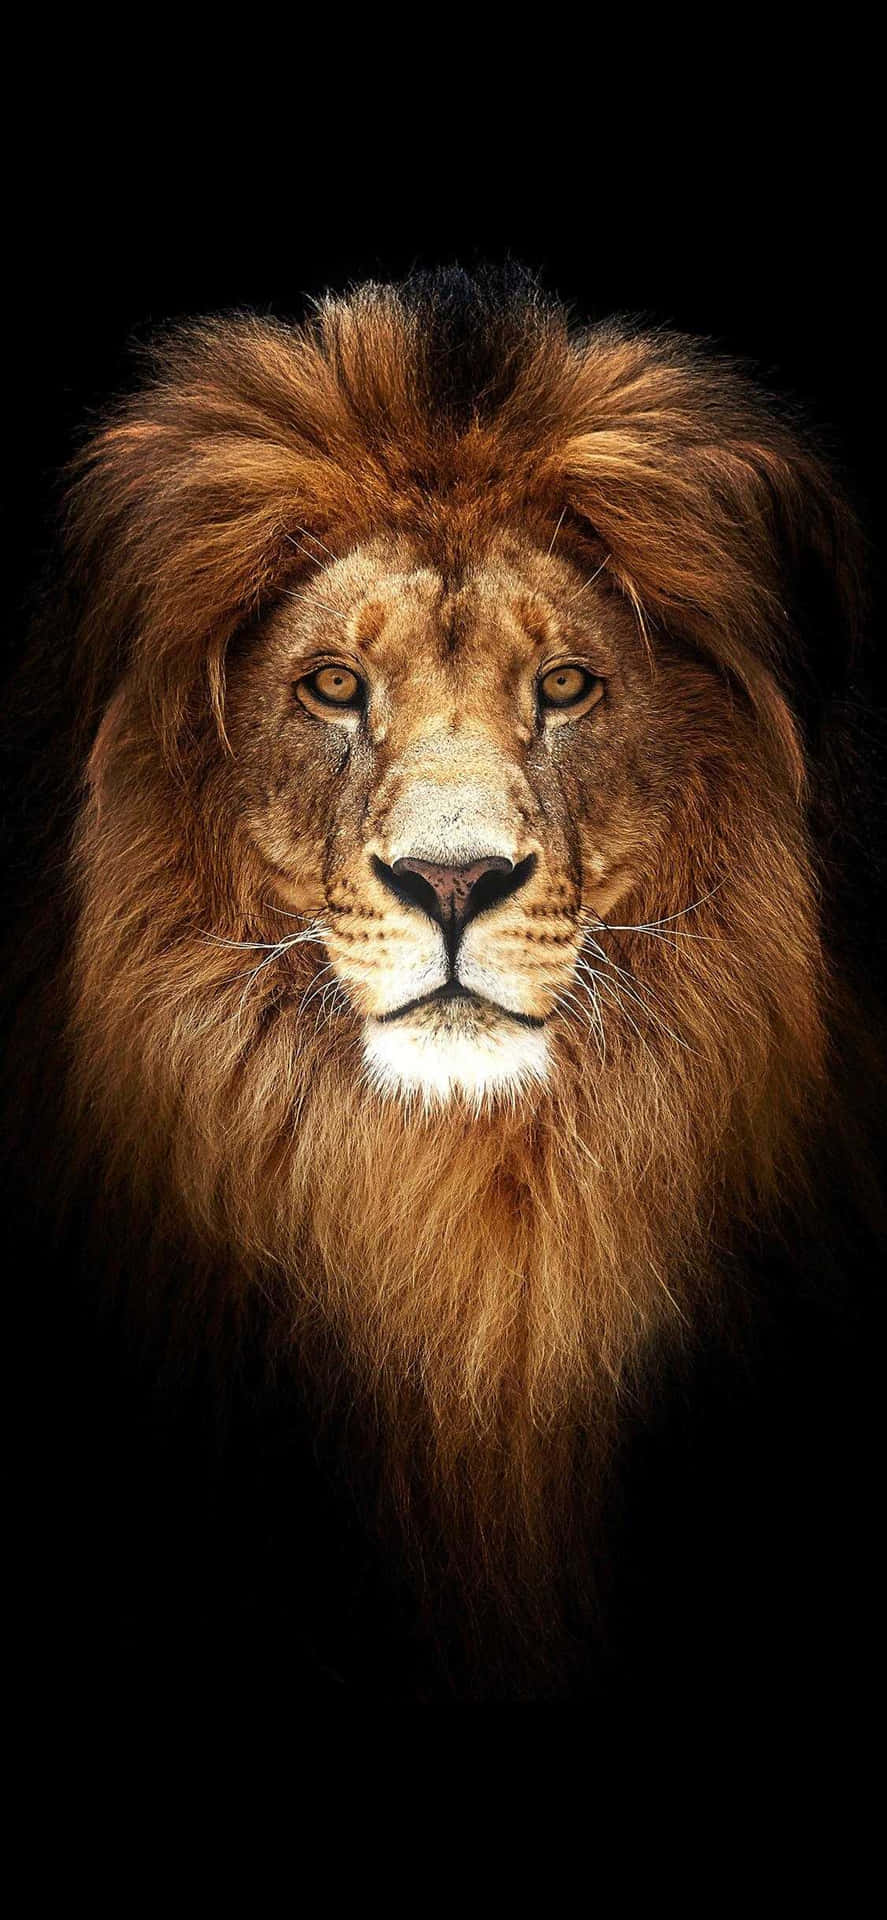 Majesty of God - The Lion Of Judah